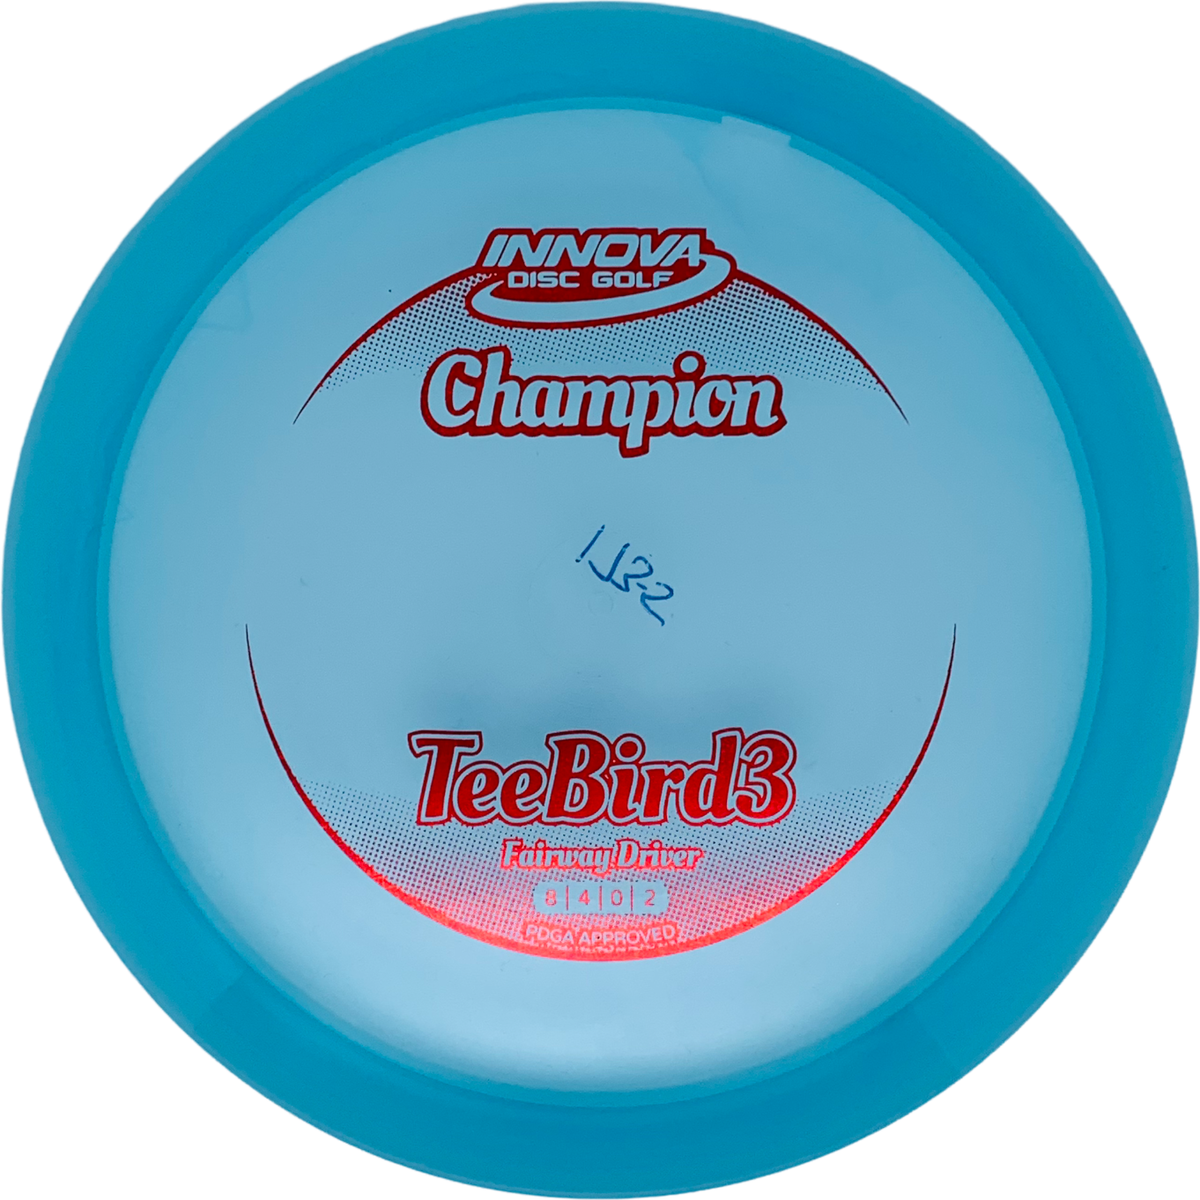 Innova Champion Teebird3